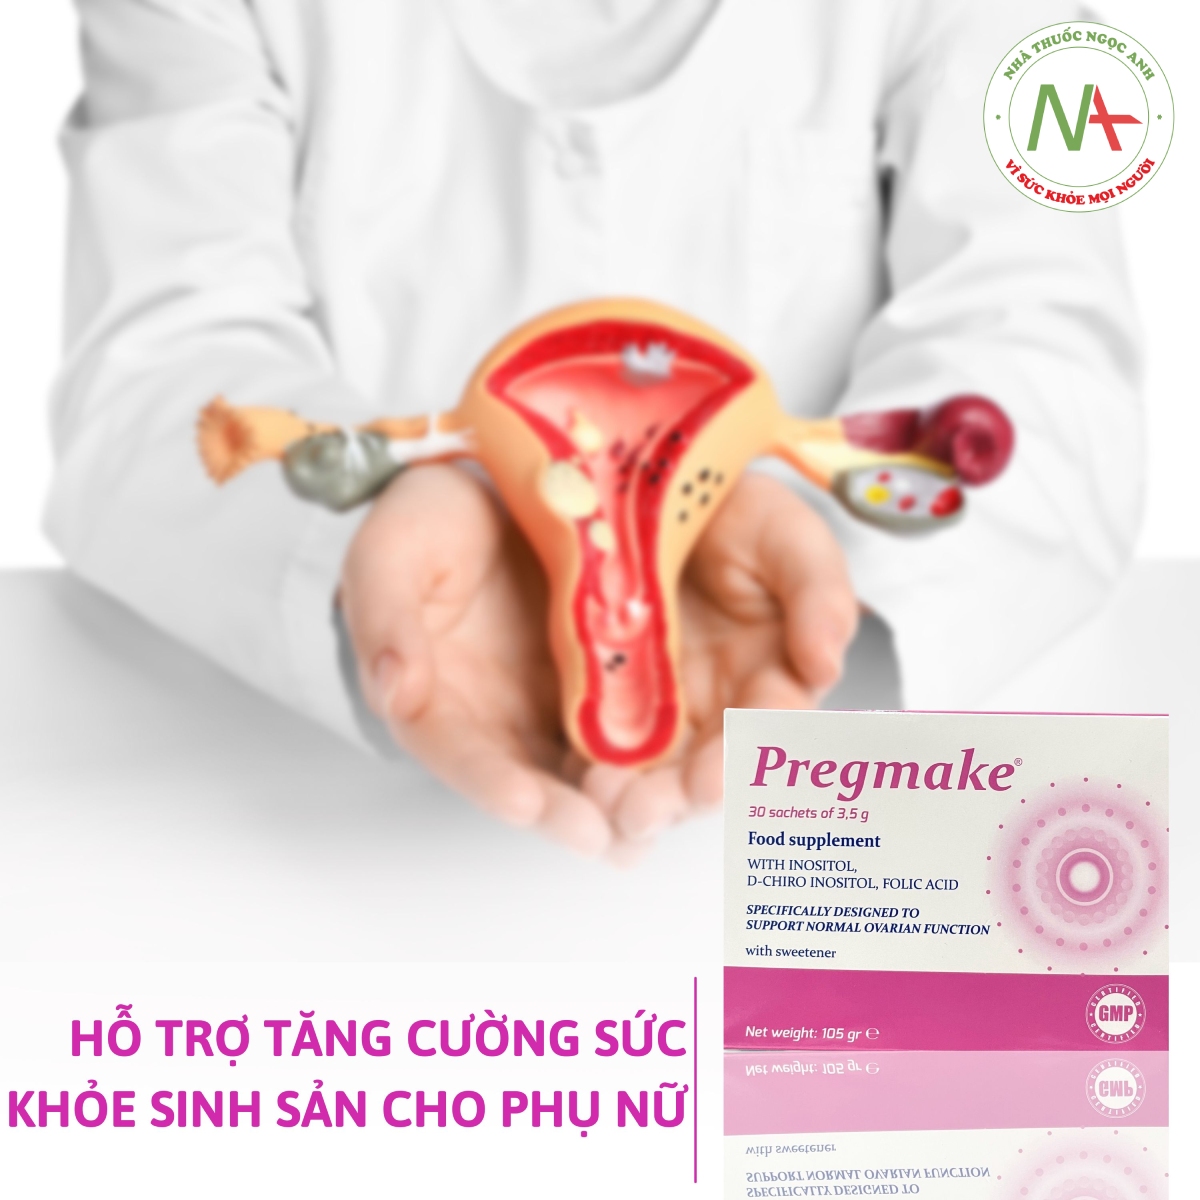 Pregmake hỗ trợ tăng cường sức khỏe sinh sản cho phụ nữ